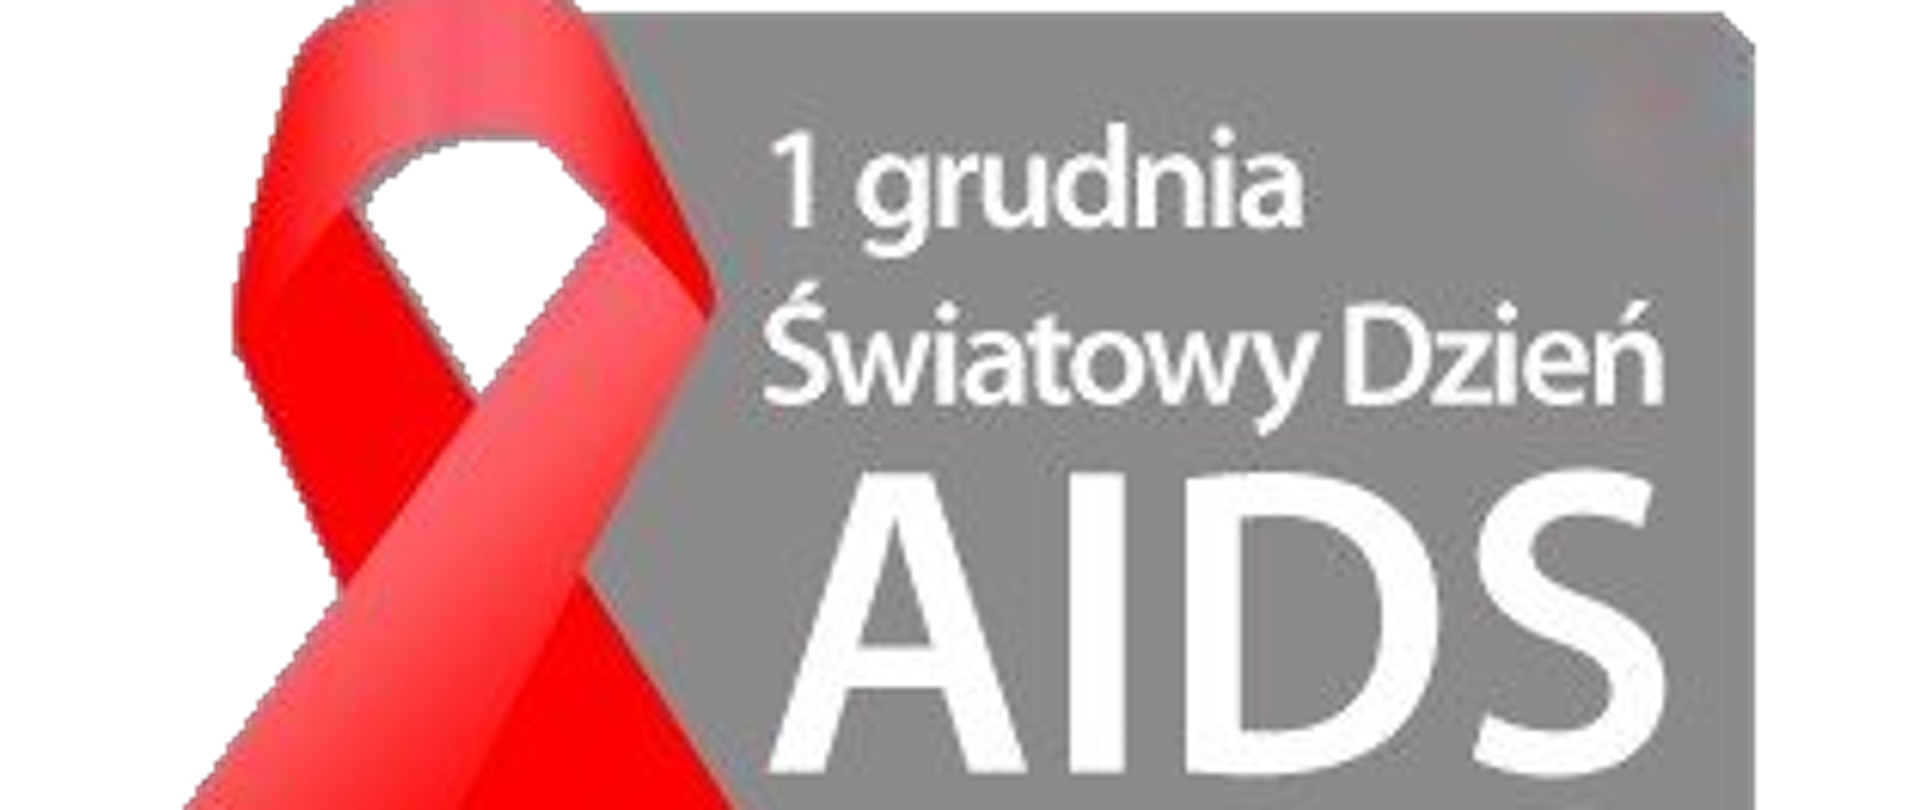 nazwa 1 grudnia Światowy Dzień AIDS